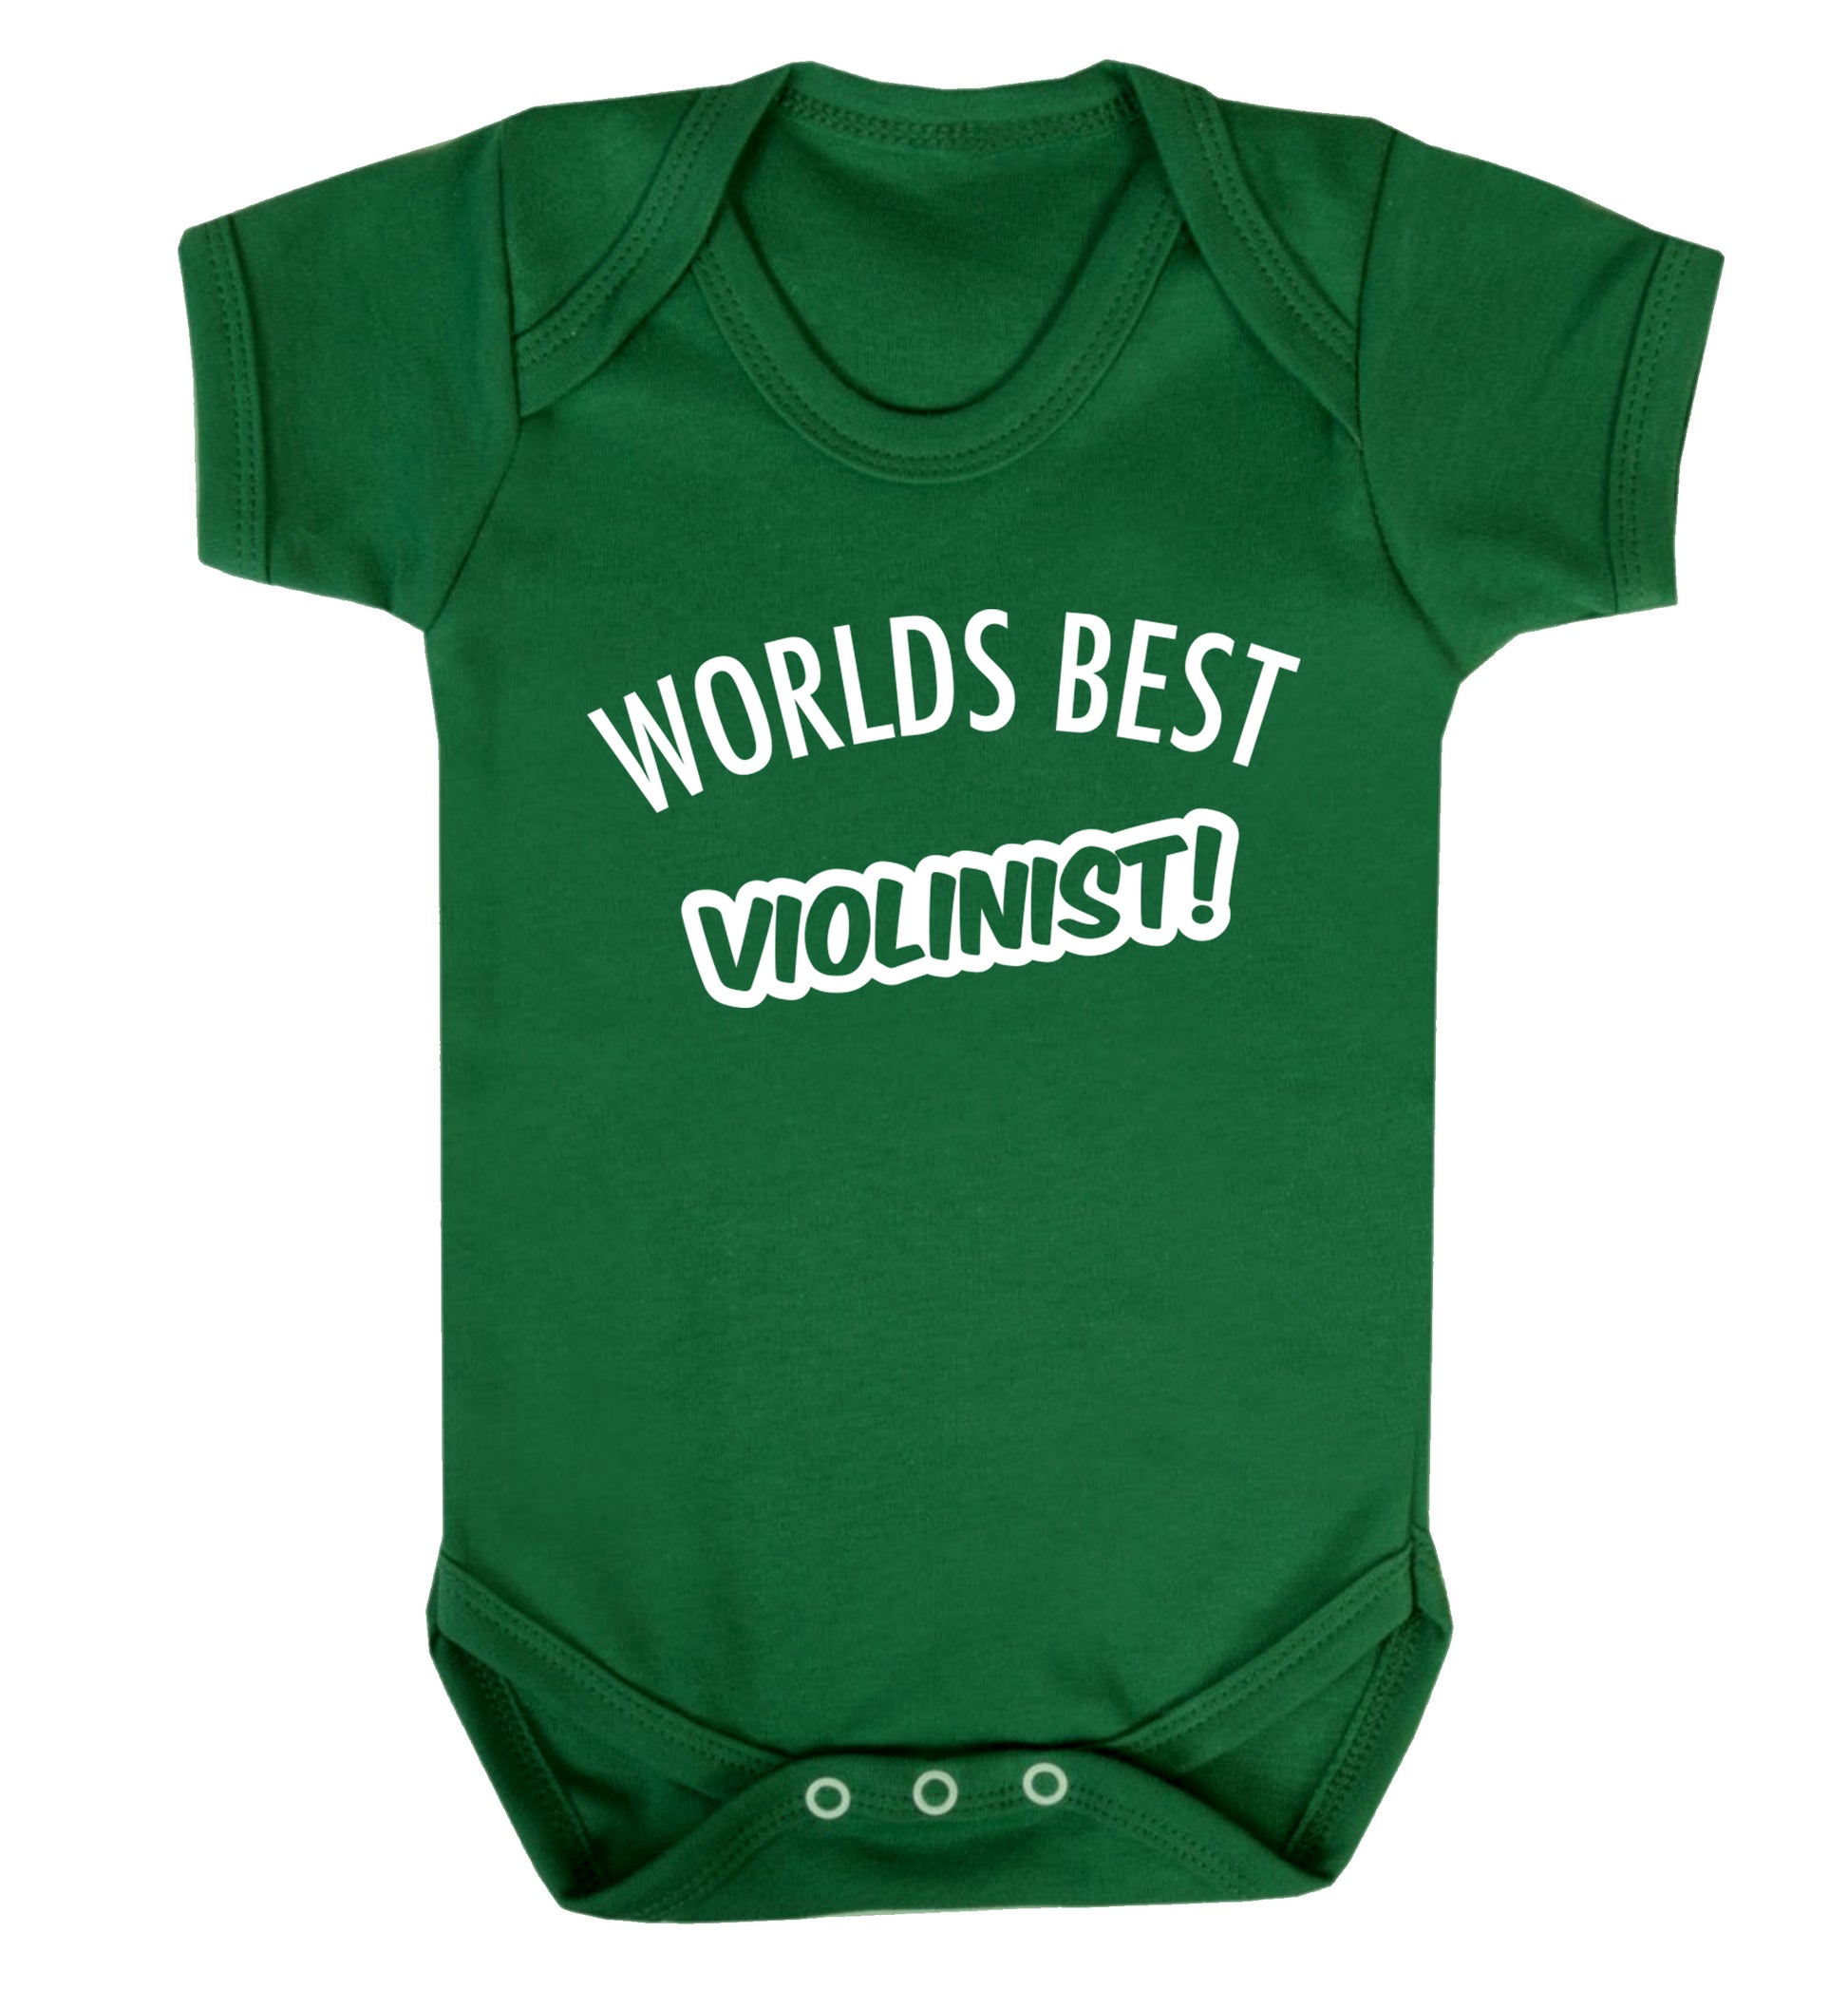 Worlds best violinist Baby Vest green 18-24 months